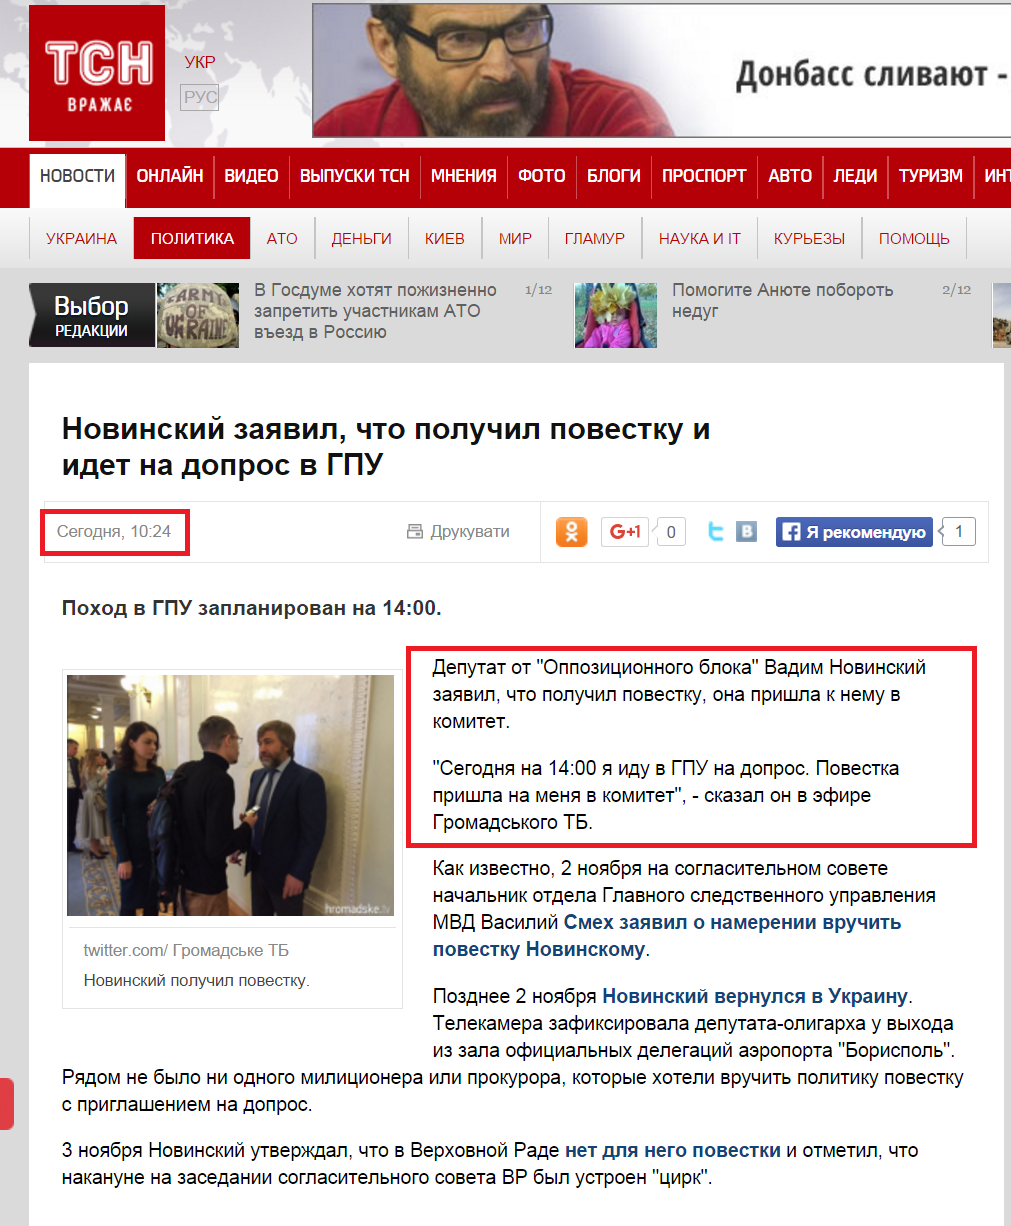 http://ru.tsn.ua/politika/novinskiy-zayavil-chto-poluchil-povestku-i-idet-na-dopros-v-gpu-519169.html